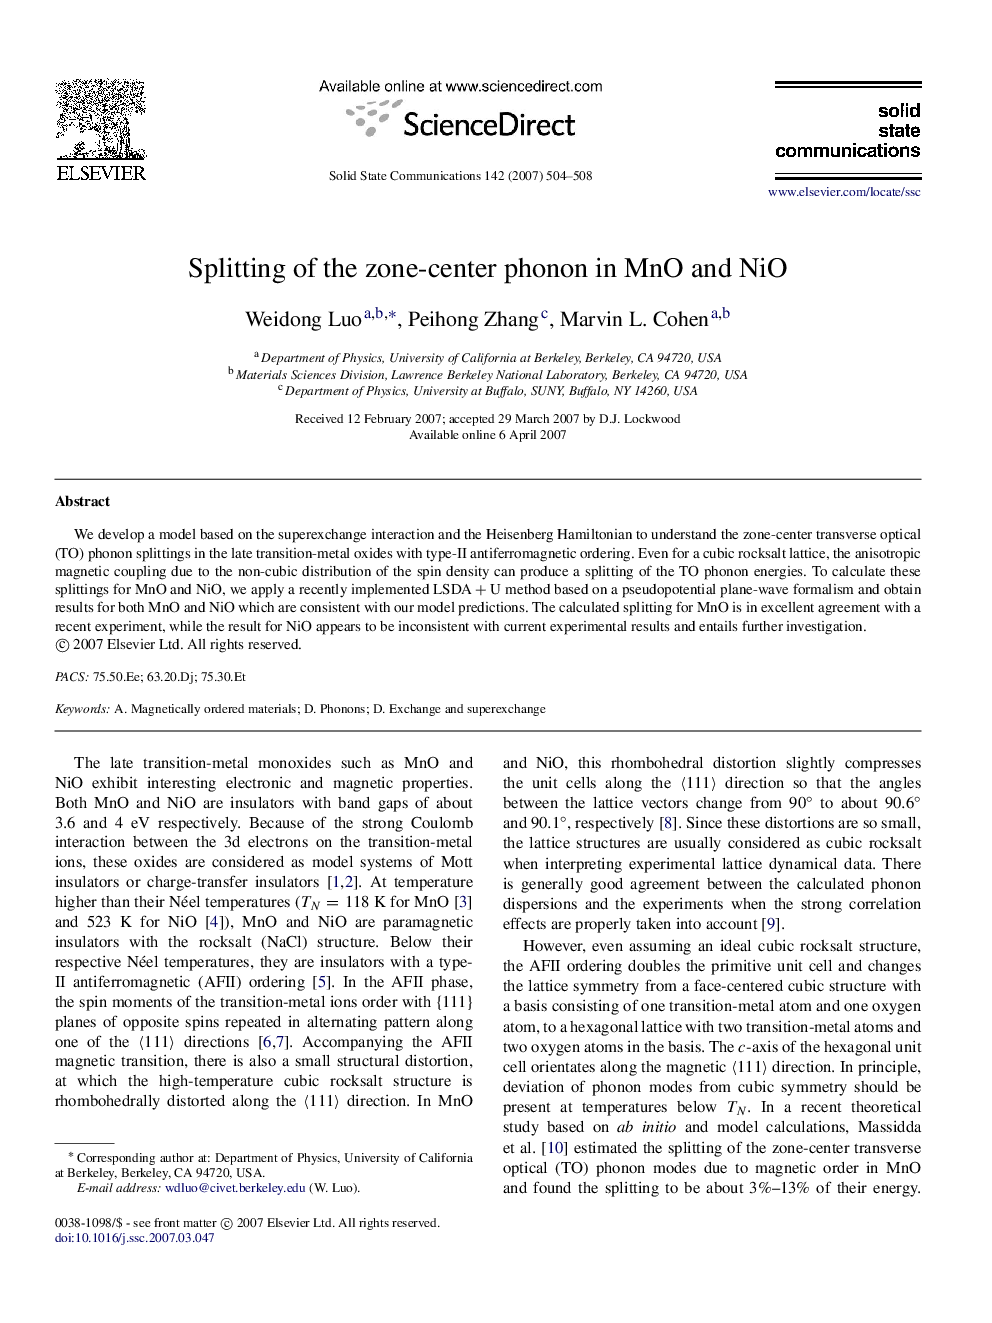 Splitting of the zone-center phonon in MnO and NiO